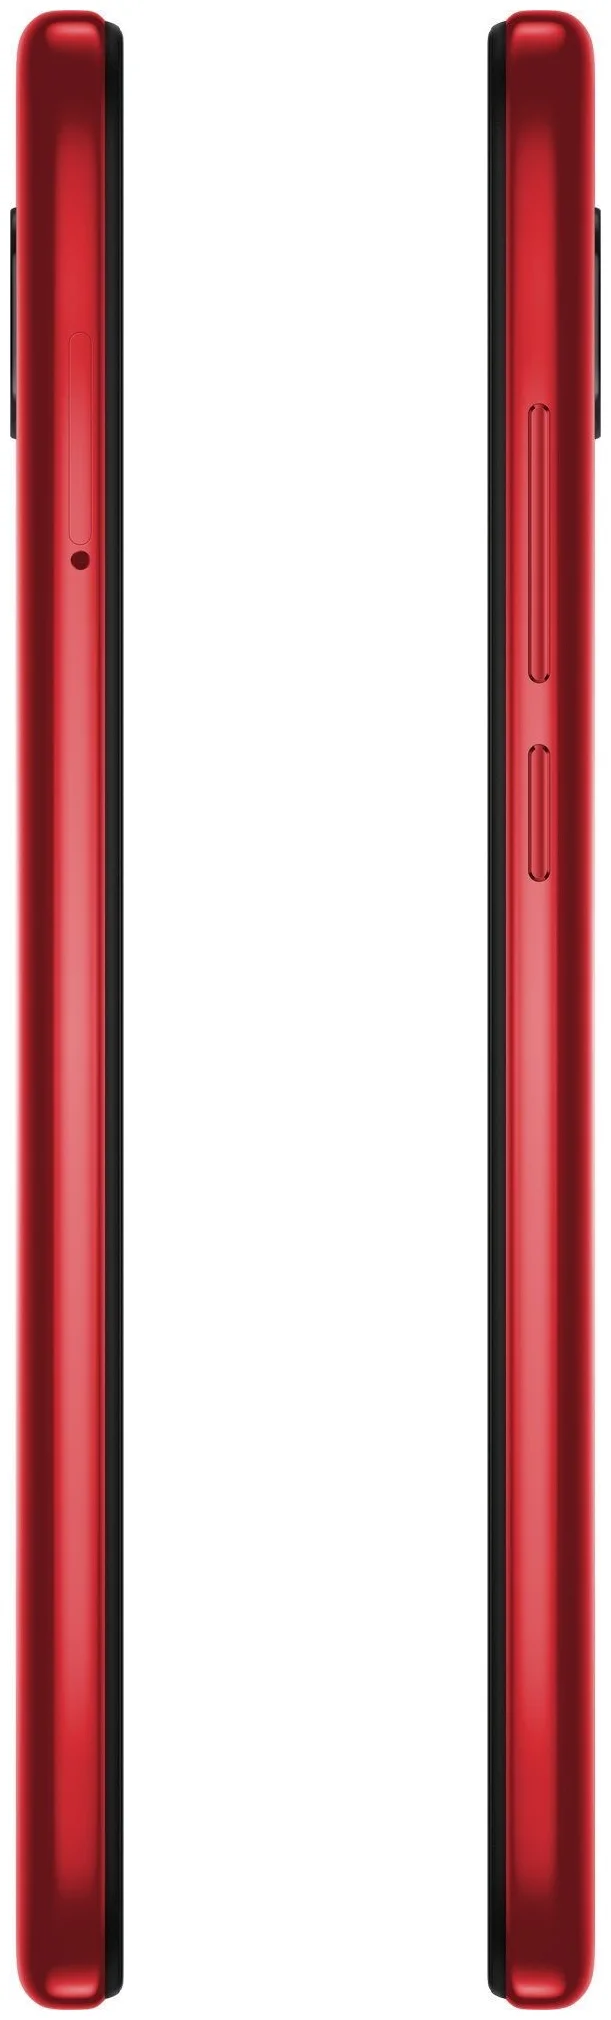 Xiaomi Redmi 8 3/32GB - вес: 188 г